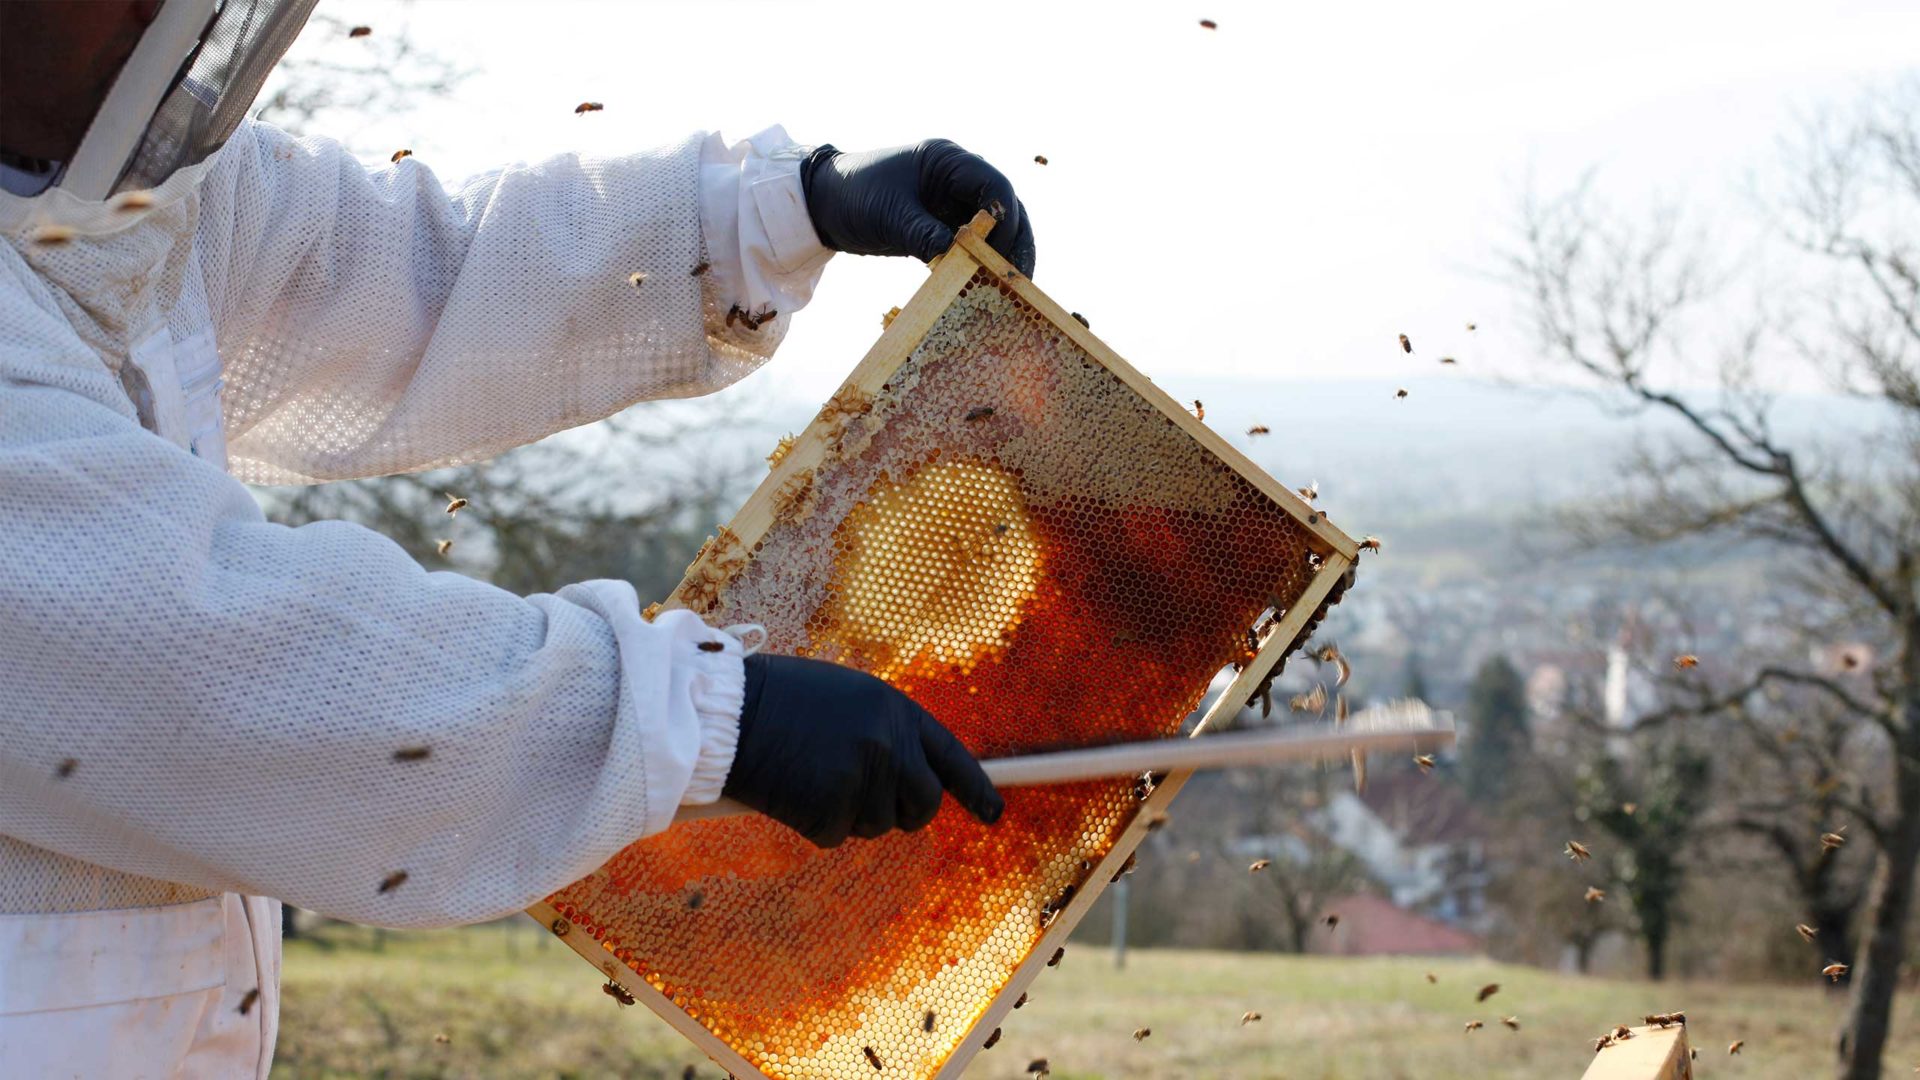 Bienen Patenschaft - Imker in Aktion